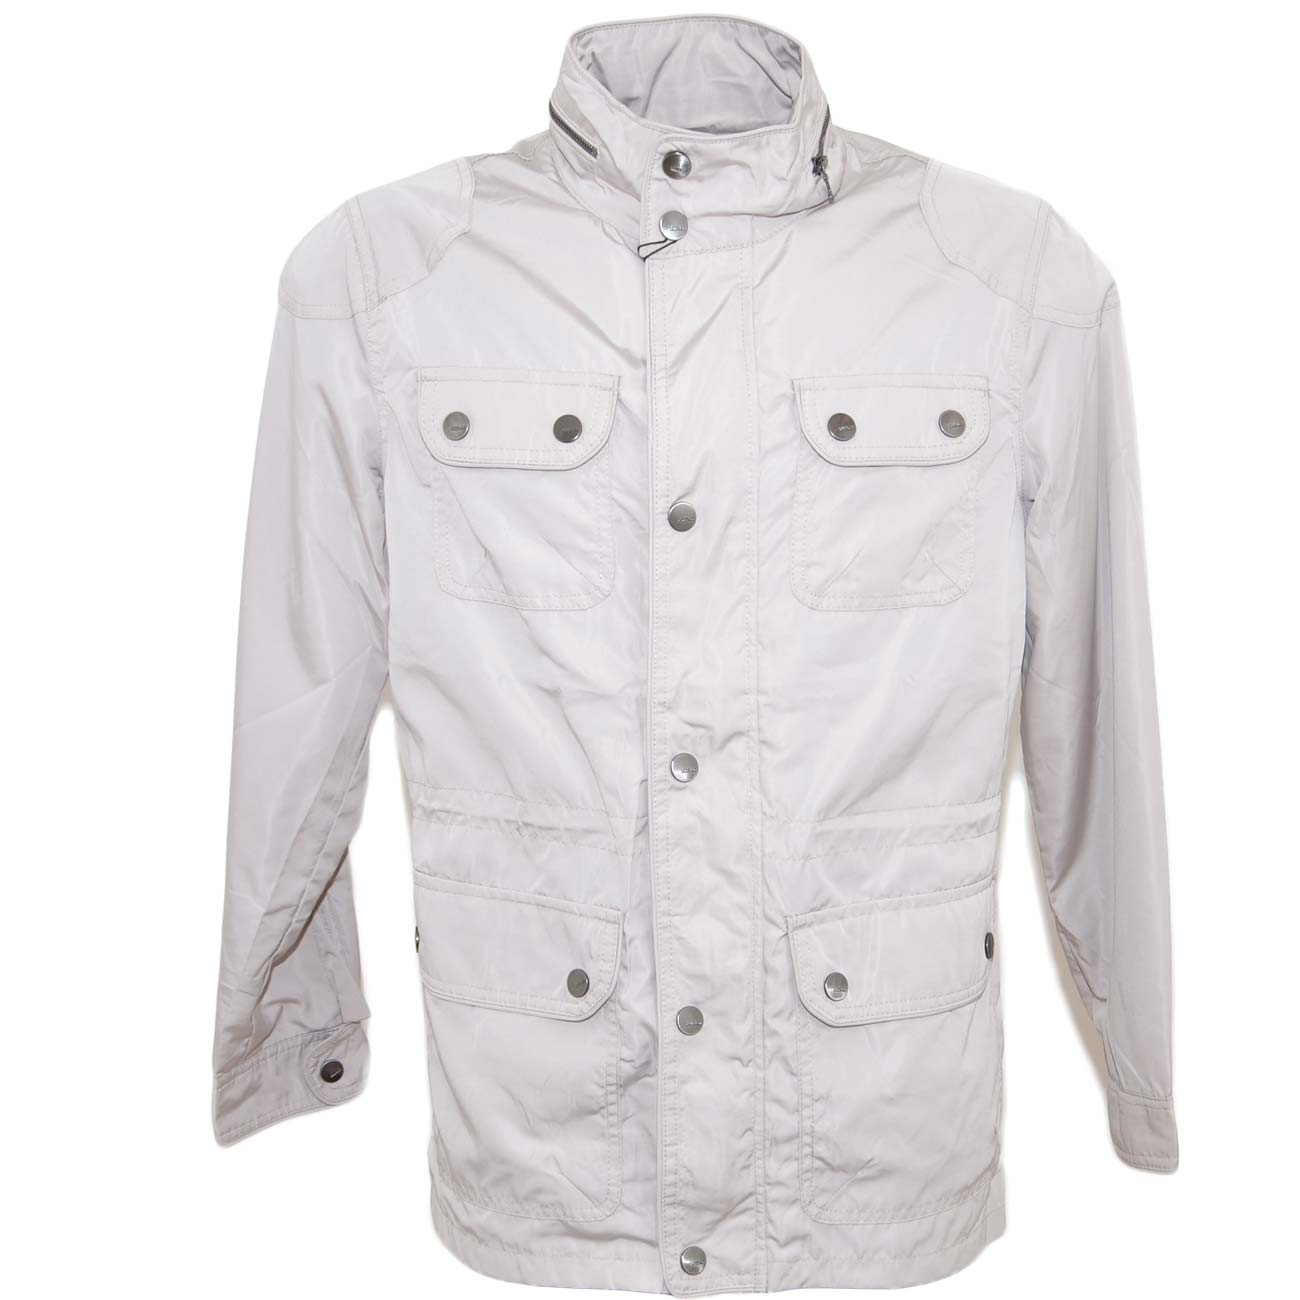 Giubbino giacca da uomo impermeabile beige chiaro da professionista trench con bottoni e zip linea basic.